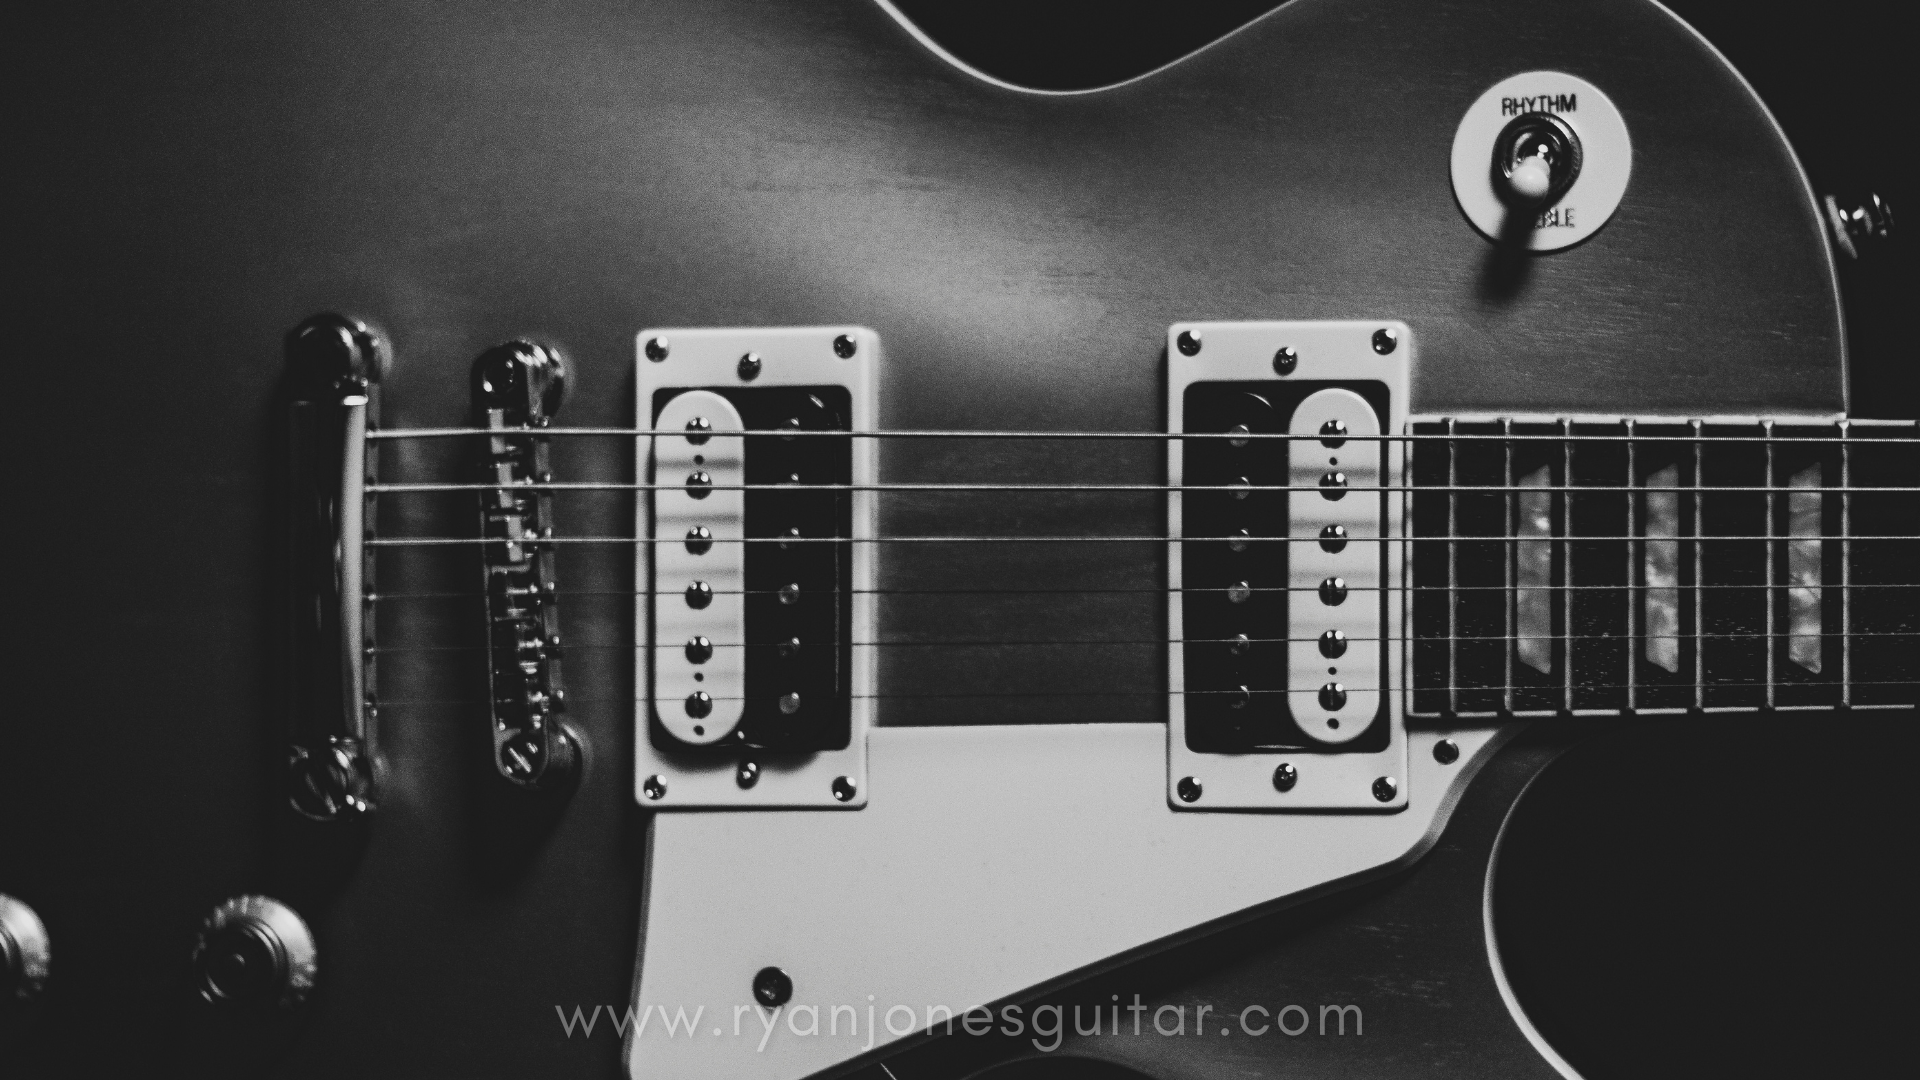 Guitar Loop Kits/Sample Packs — Ry Jones Guitar